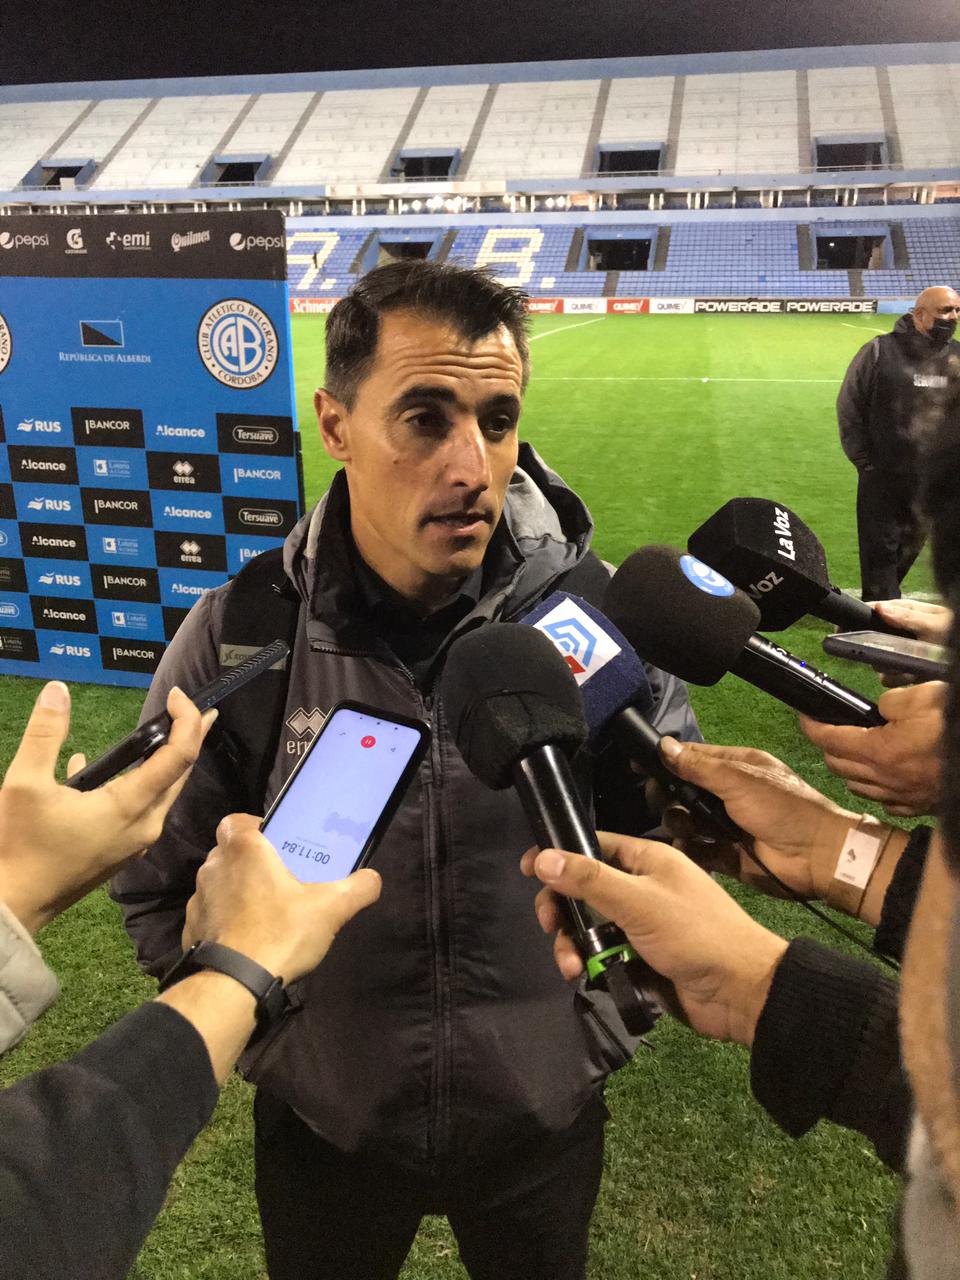 Farré tras el empate de Belgrano: "No pudimos cerrar el partido y le dimos vida al rival" | Canal Showsport